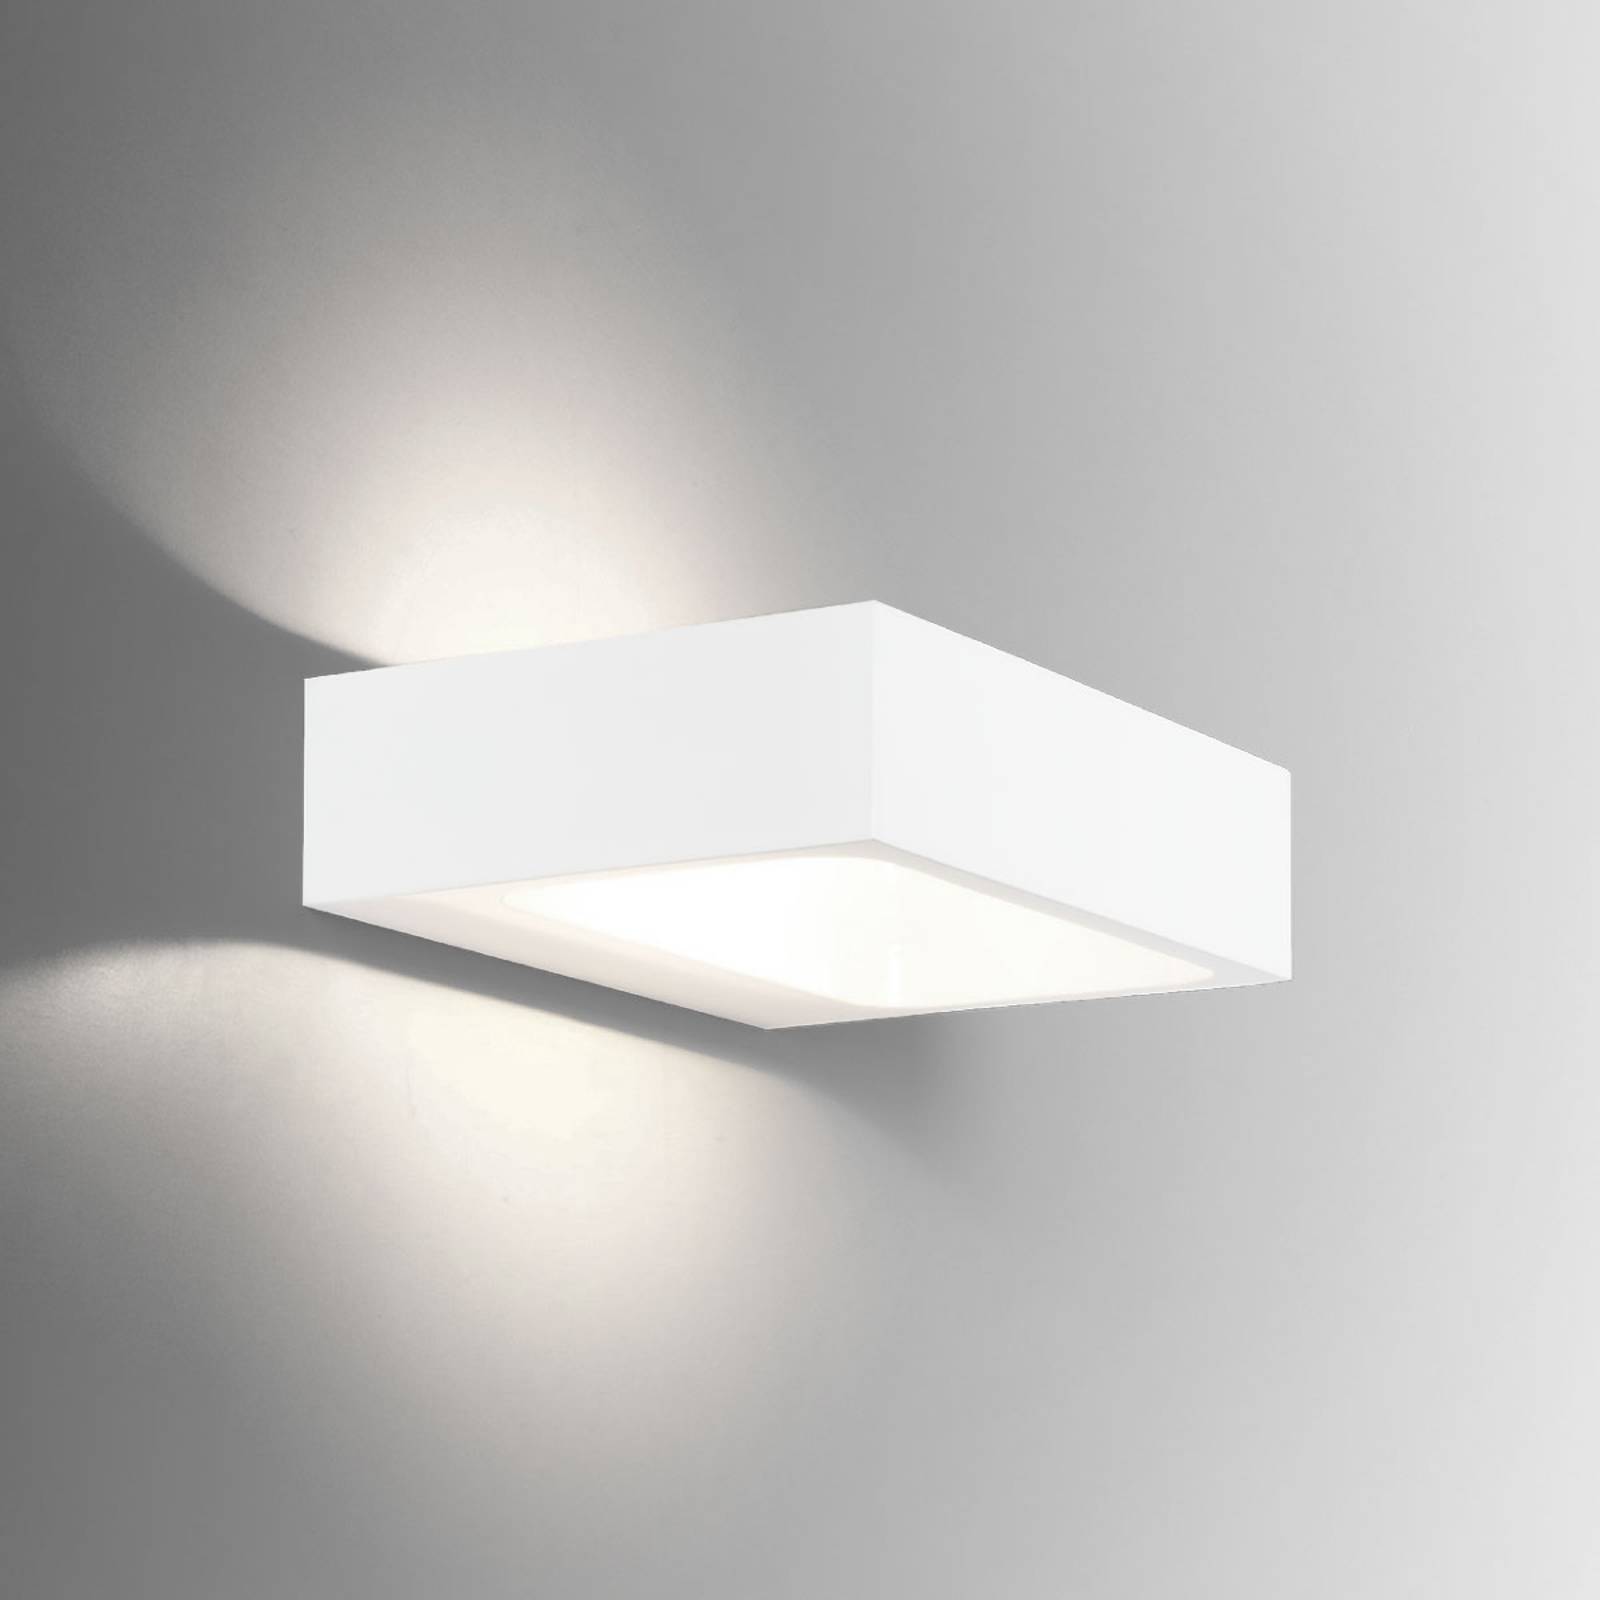 Wever & Ducré Lighting WEVER & DUCRÉ Bento 1,3 LED nástěnné světlo bílé barvy